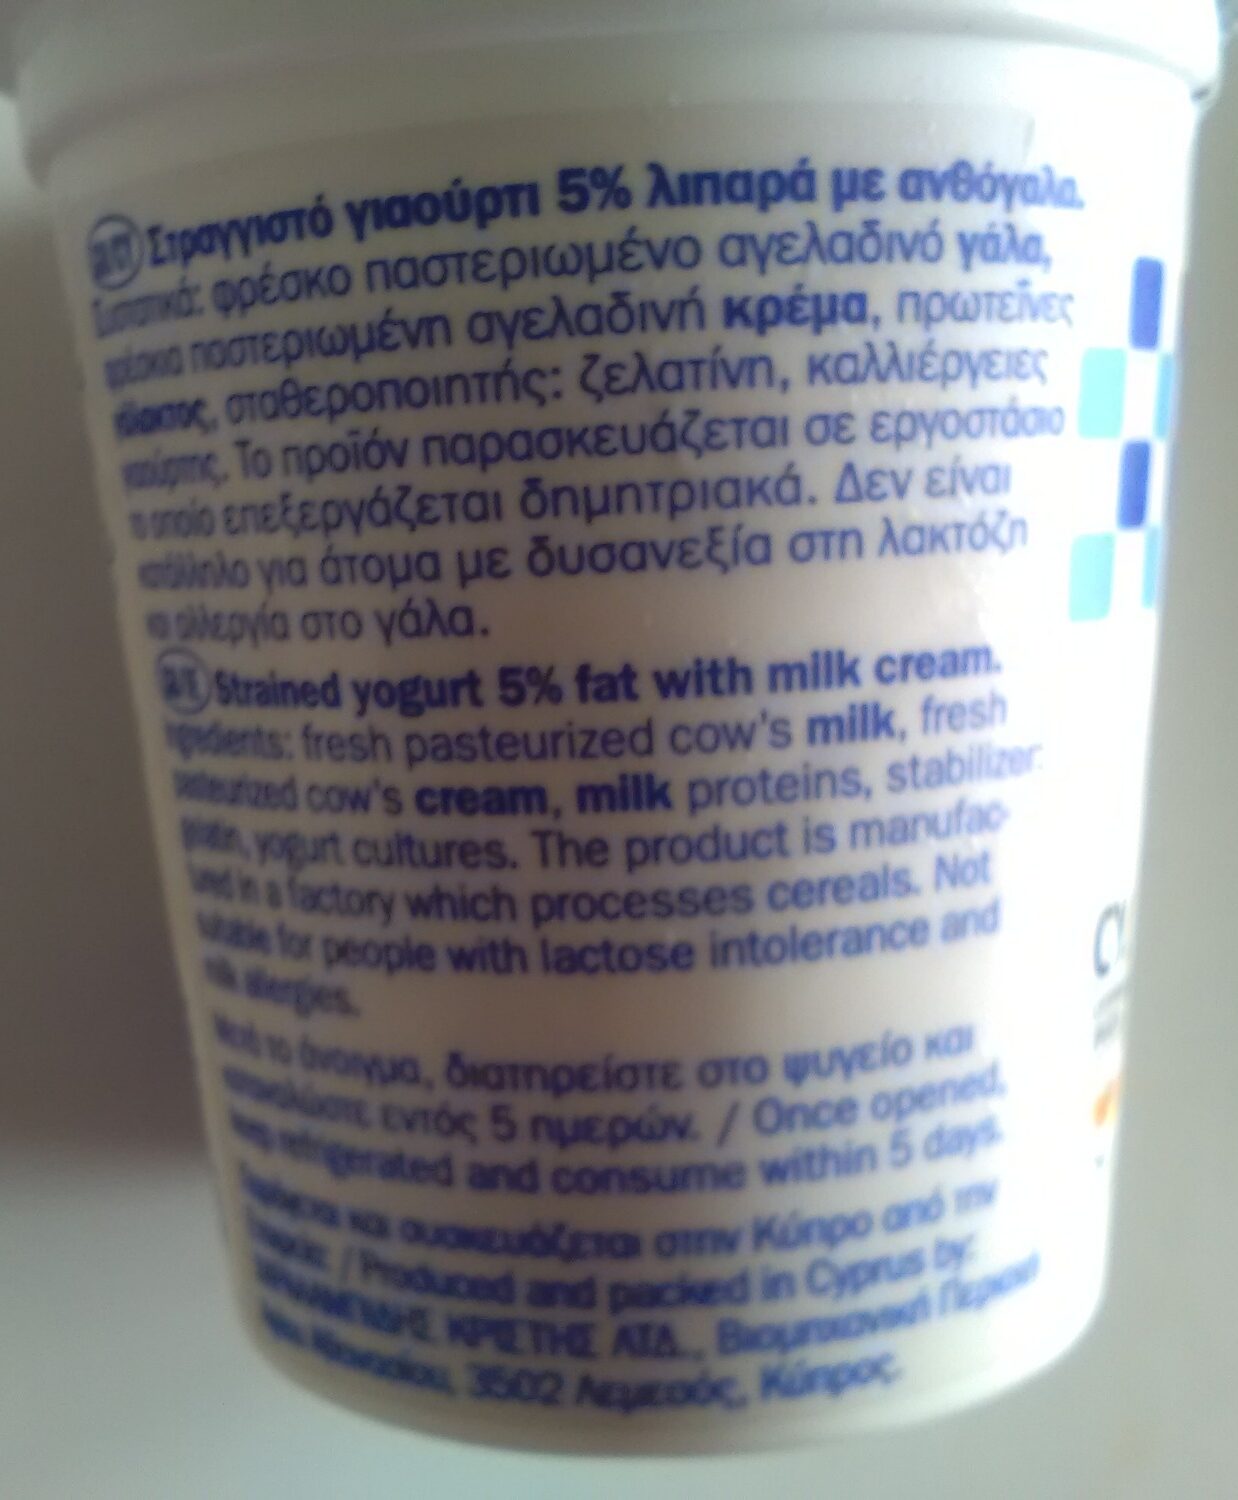 Strained yoghurt 5% - Προϊόν - en